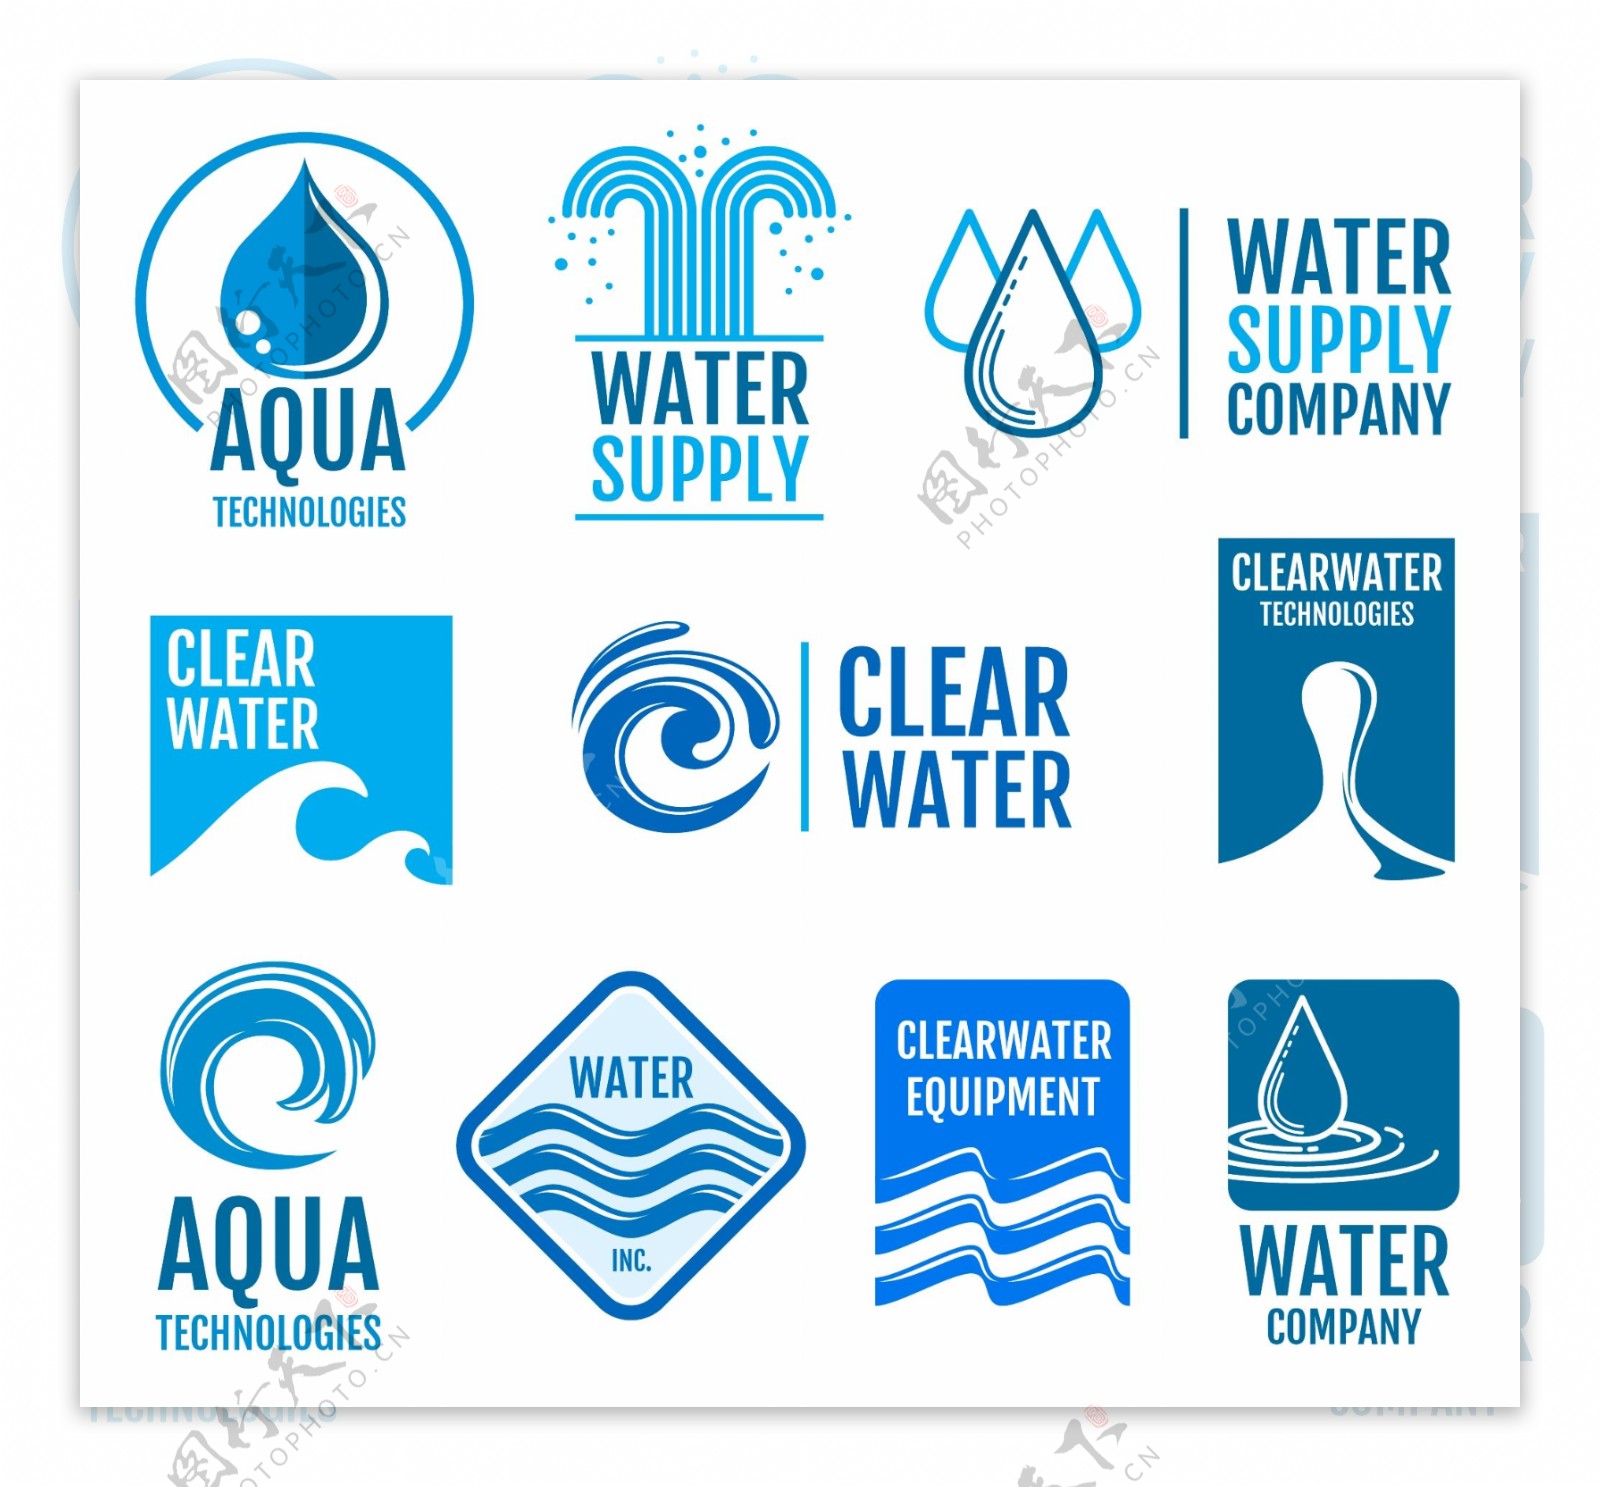 天然水标签标志